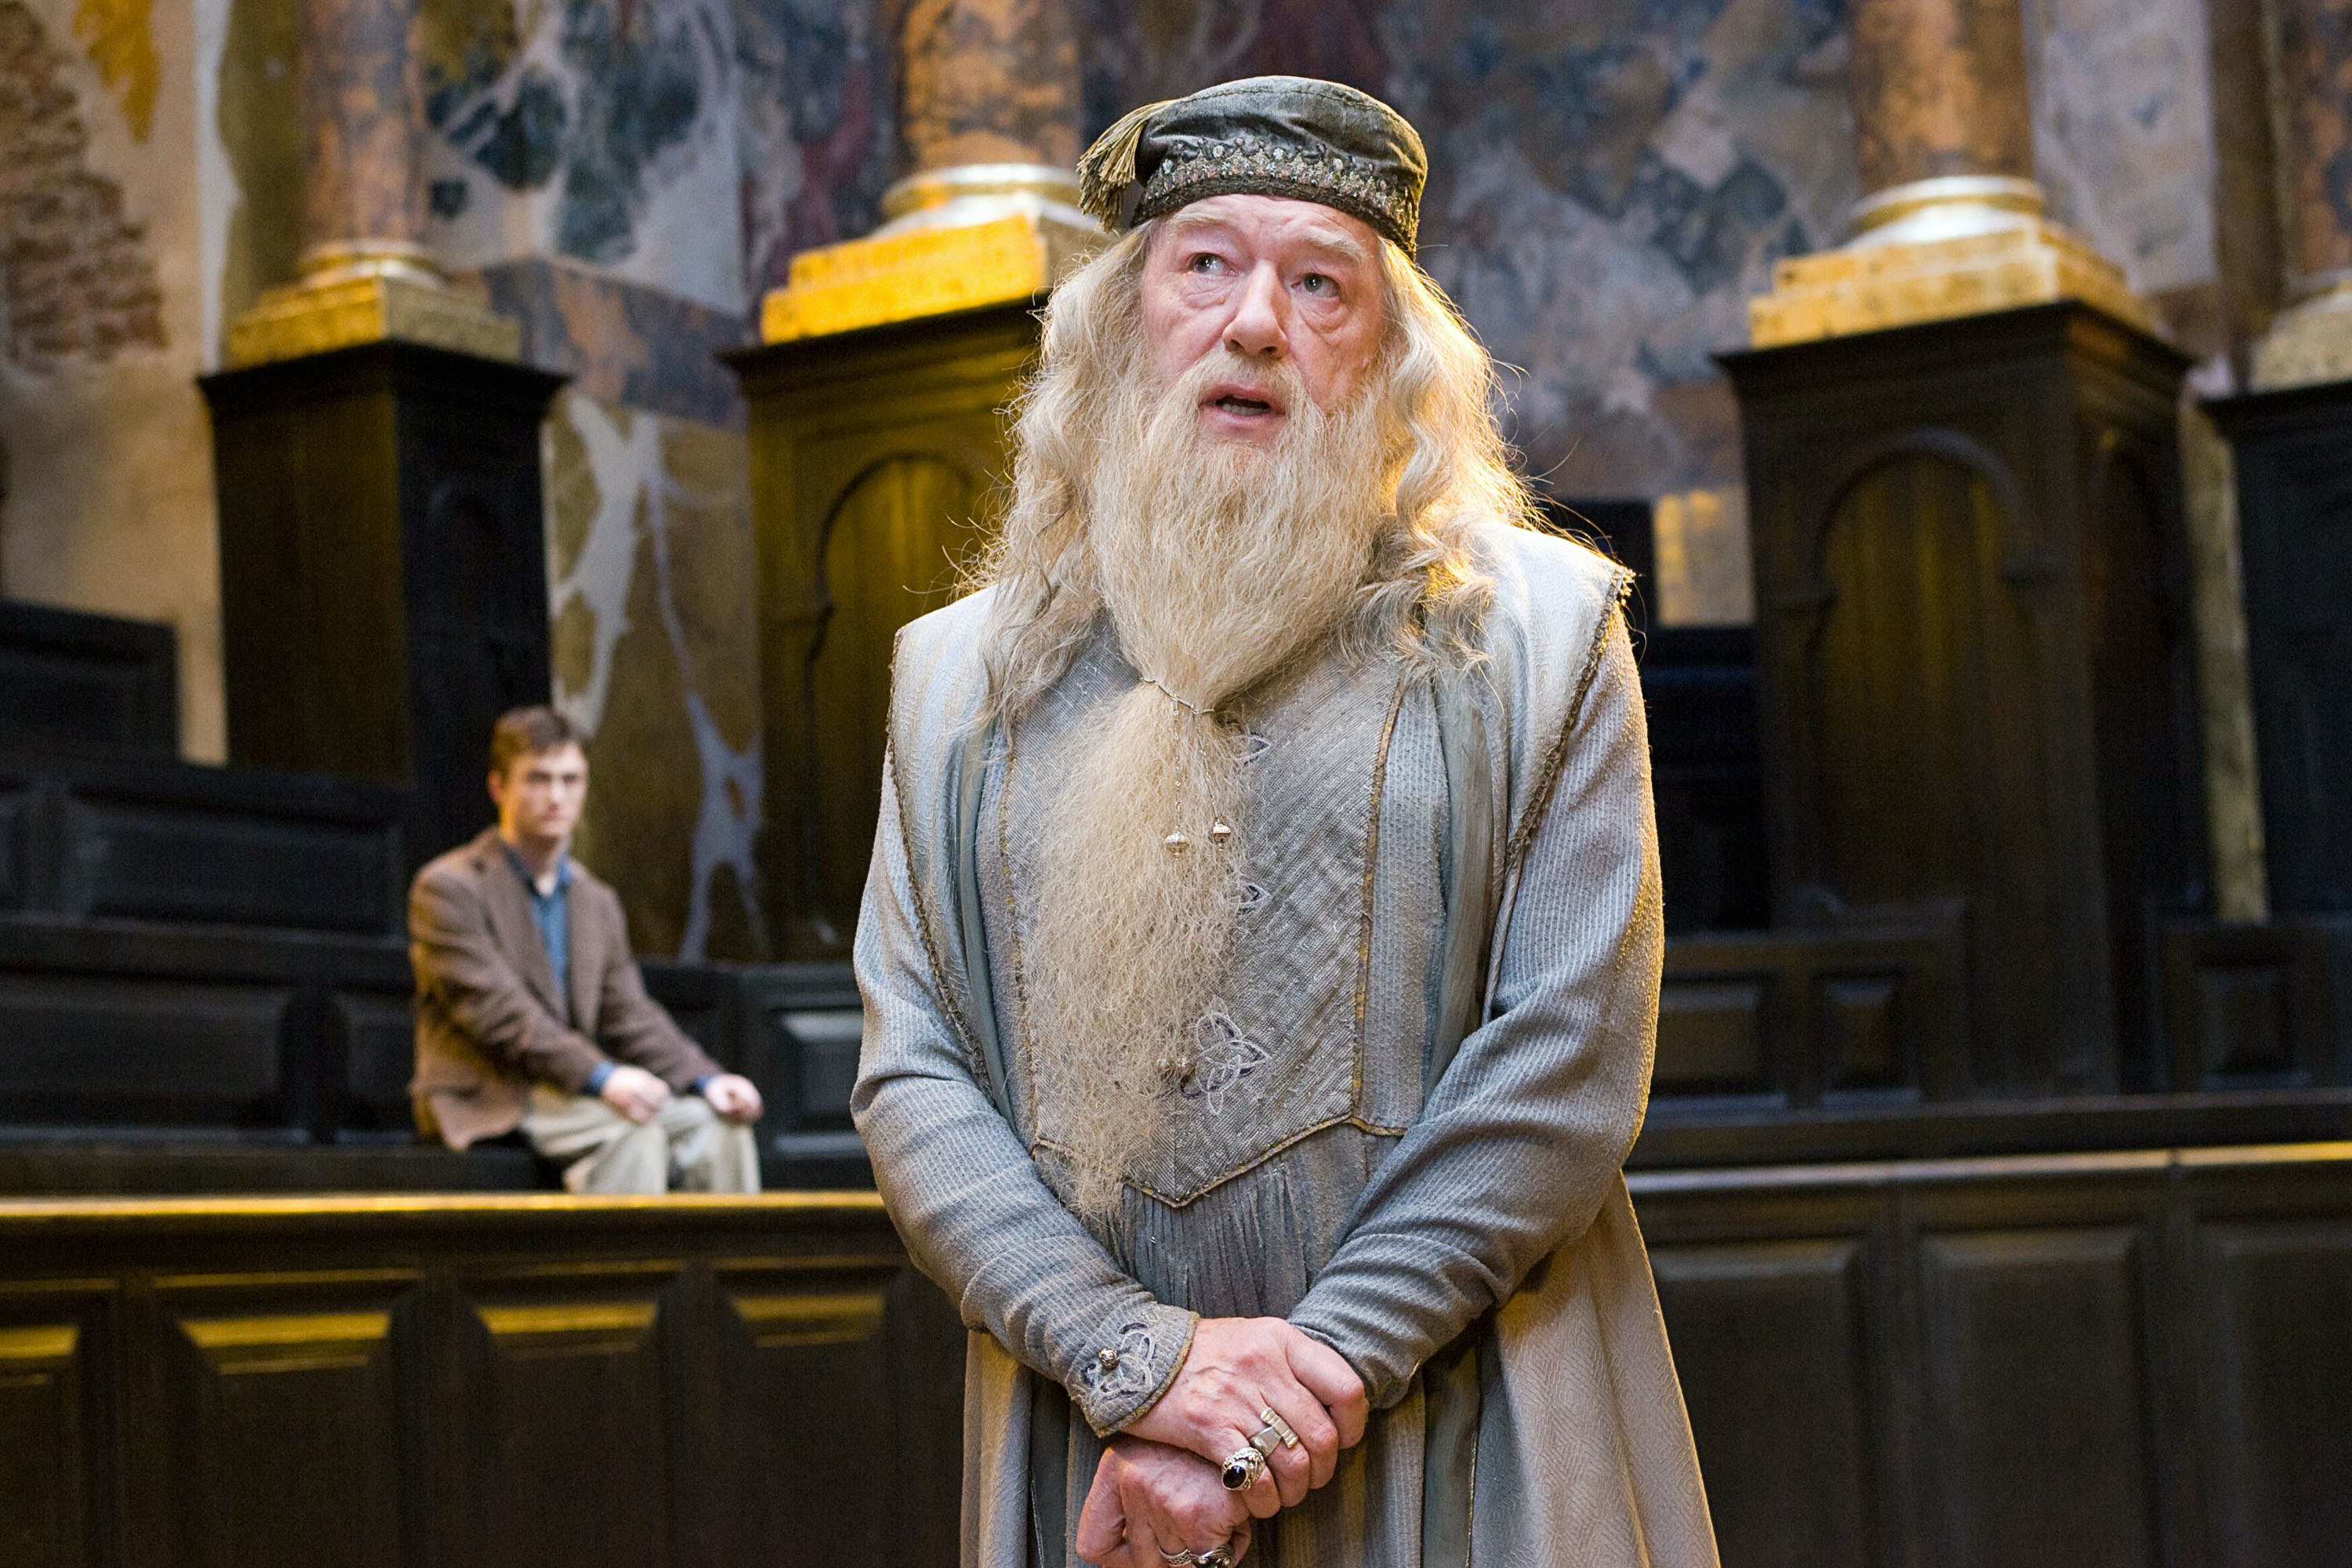 Micahel Gambon as Dumbledore